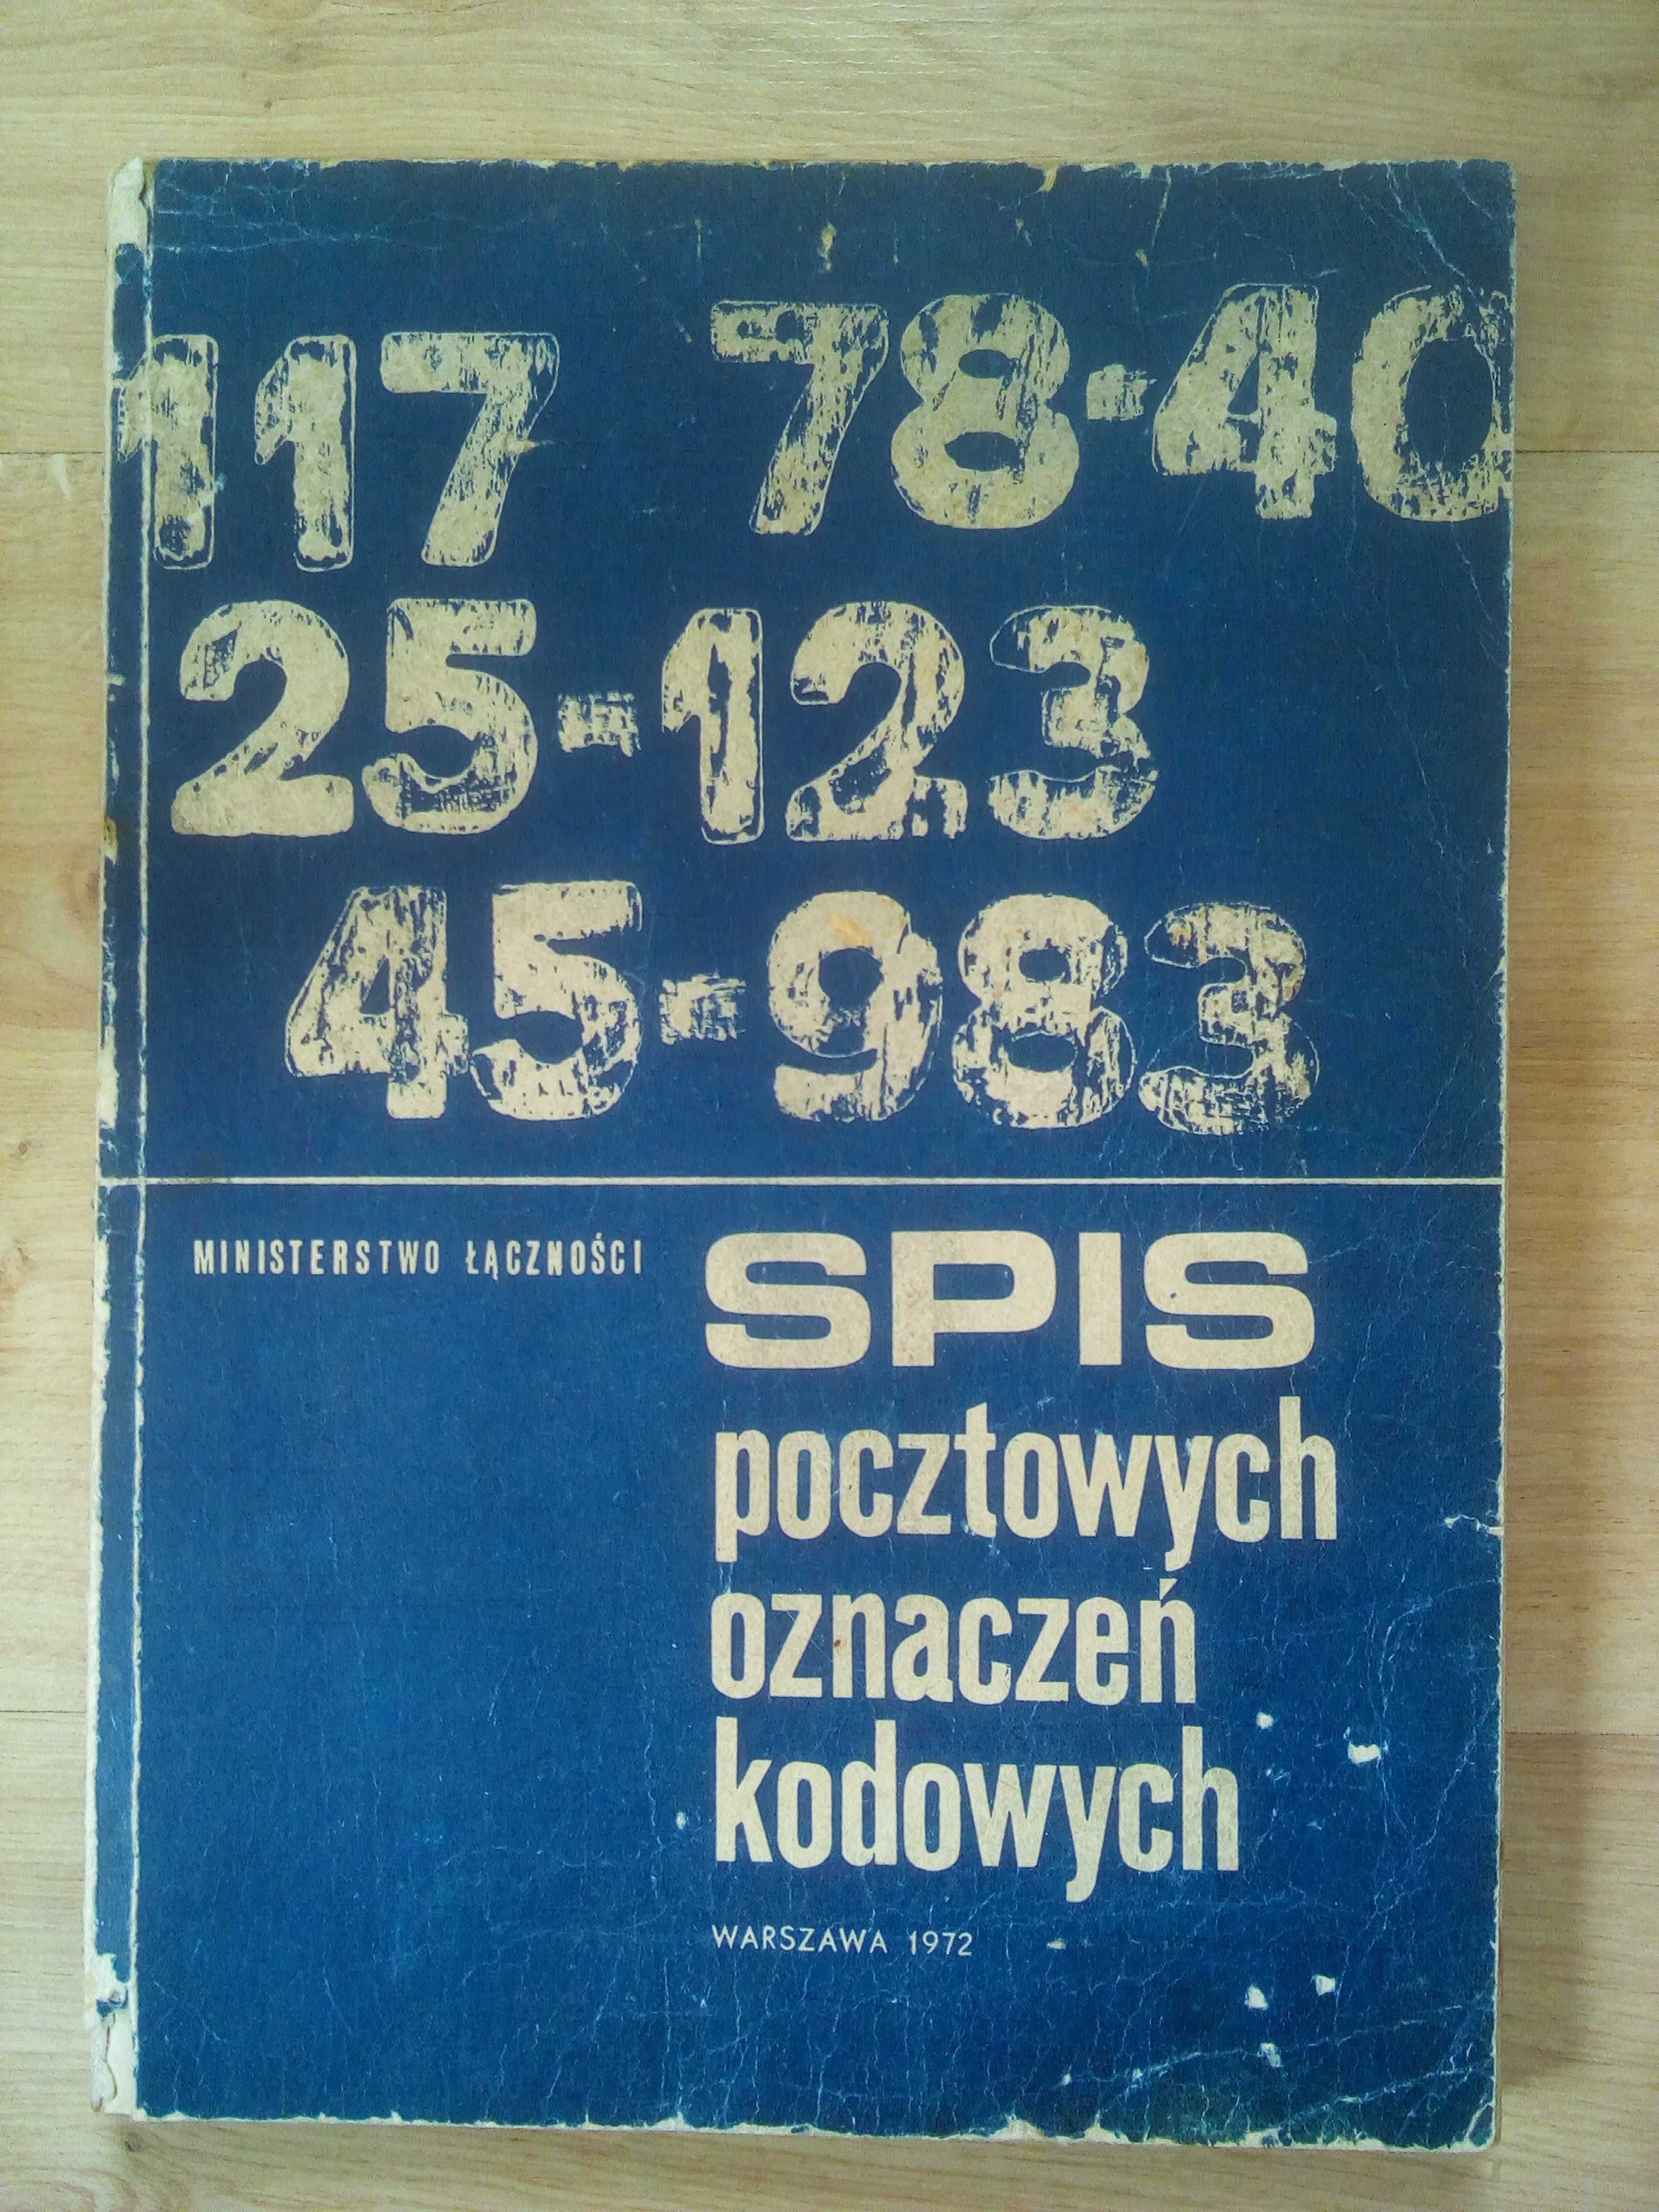 książka spisu kodów pocztowych z 1972 roku